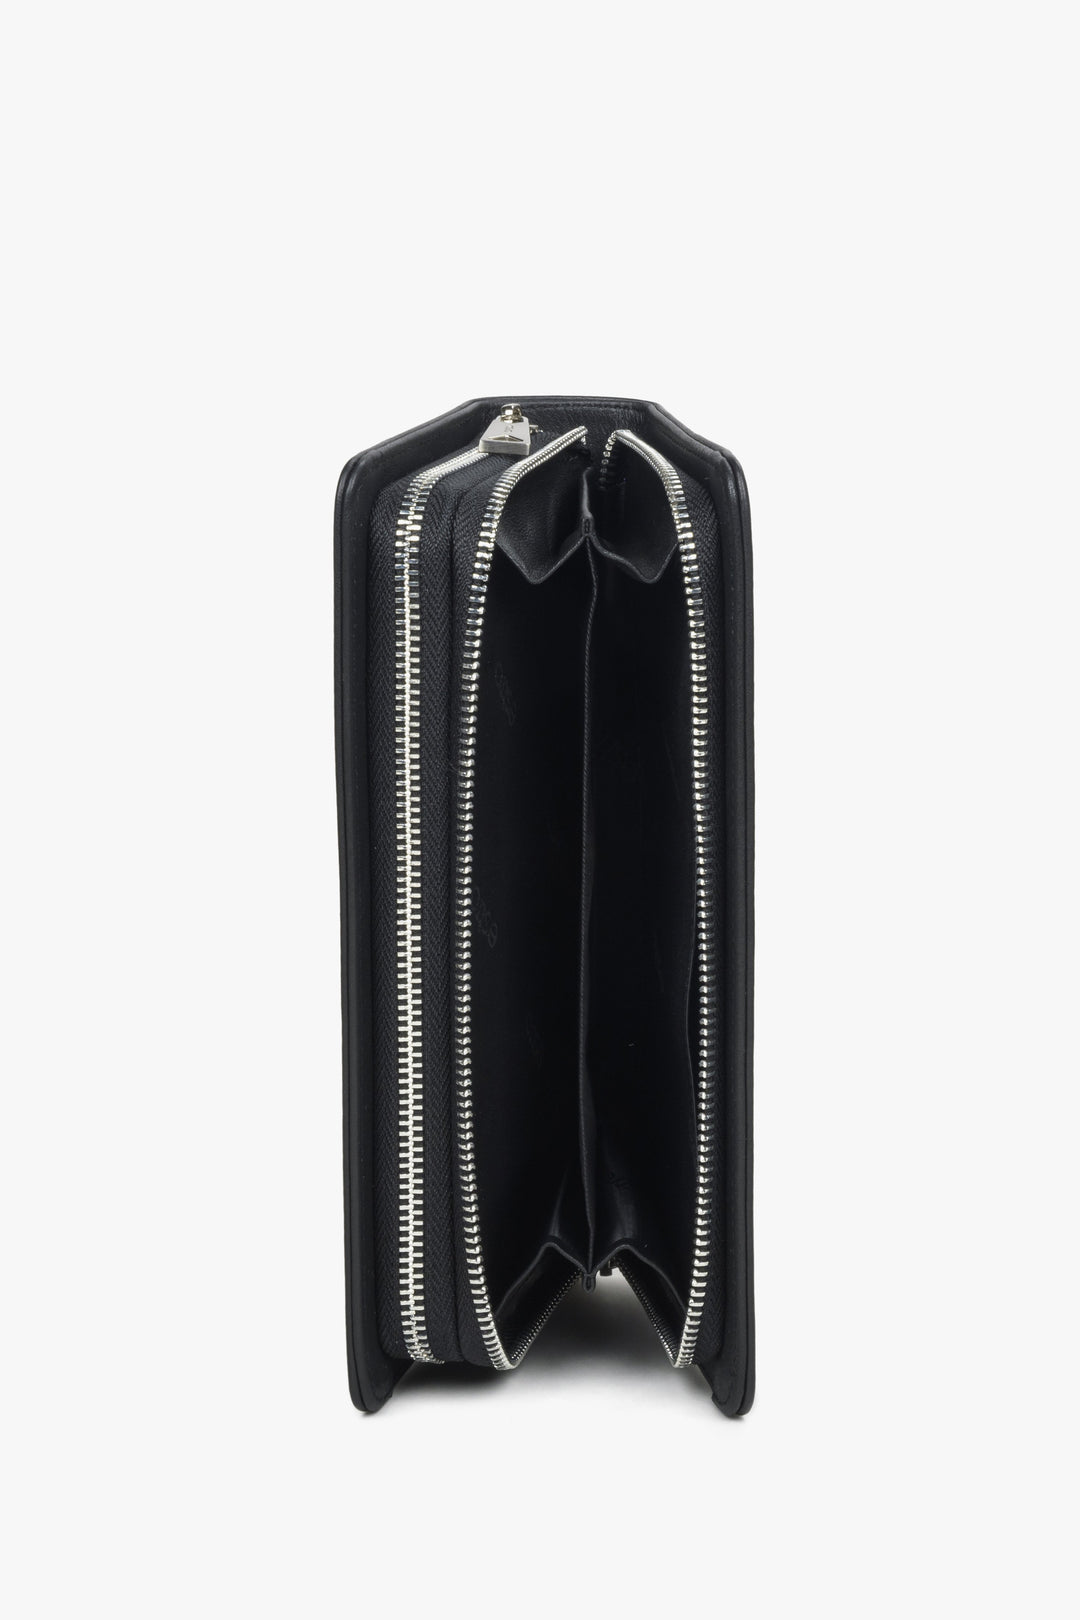 Skórzana czarna portmonetka męska w dużym formacie Estro - prezentacja wnętrza modelu.